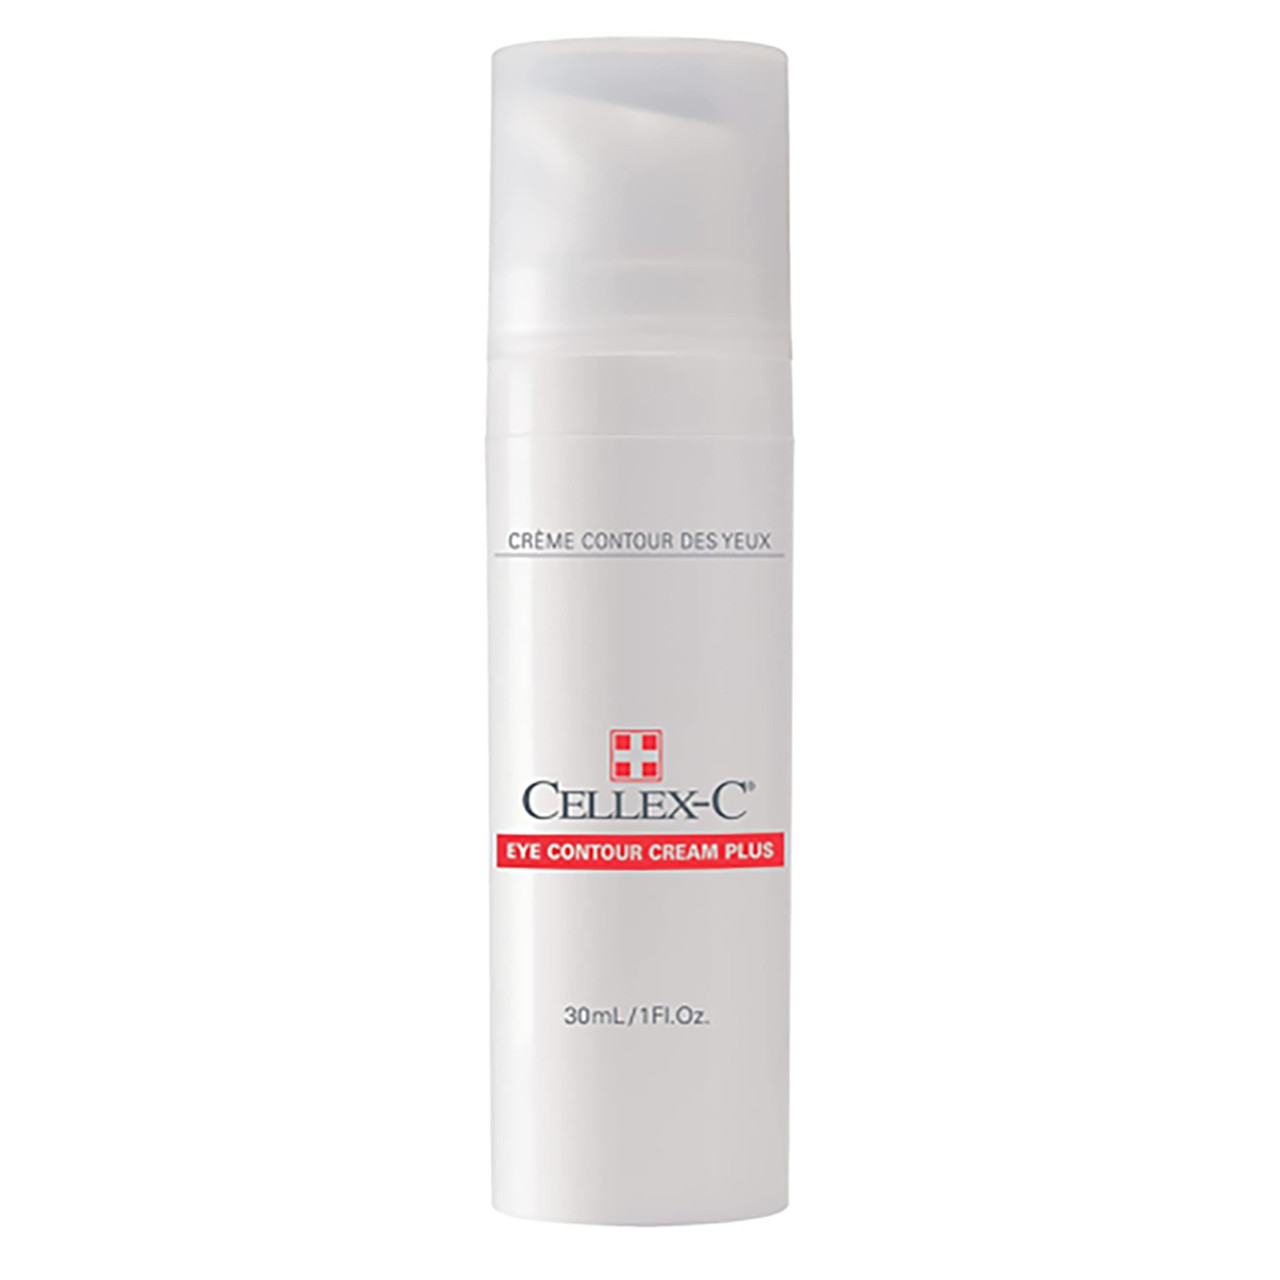 Cellex-C Eye Contour Cream Plus - 1 oz (30 ml) (C1125)